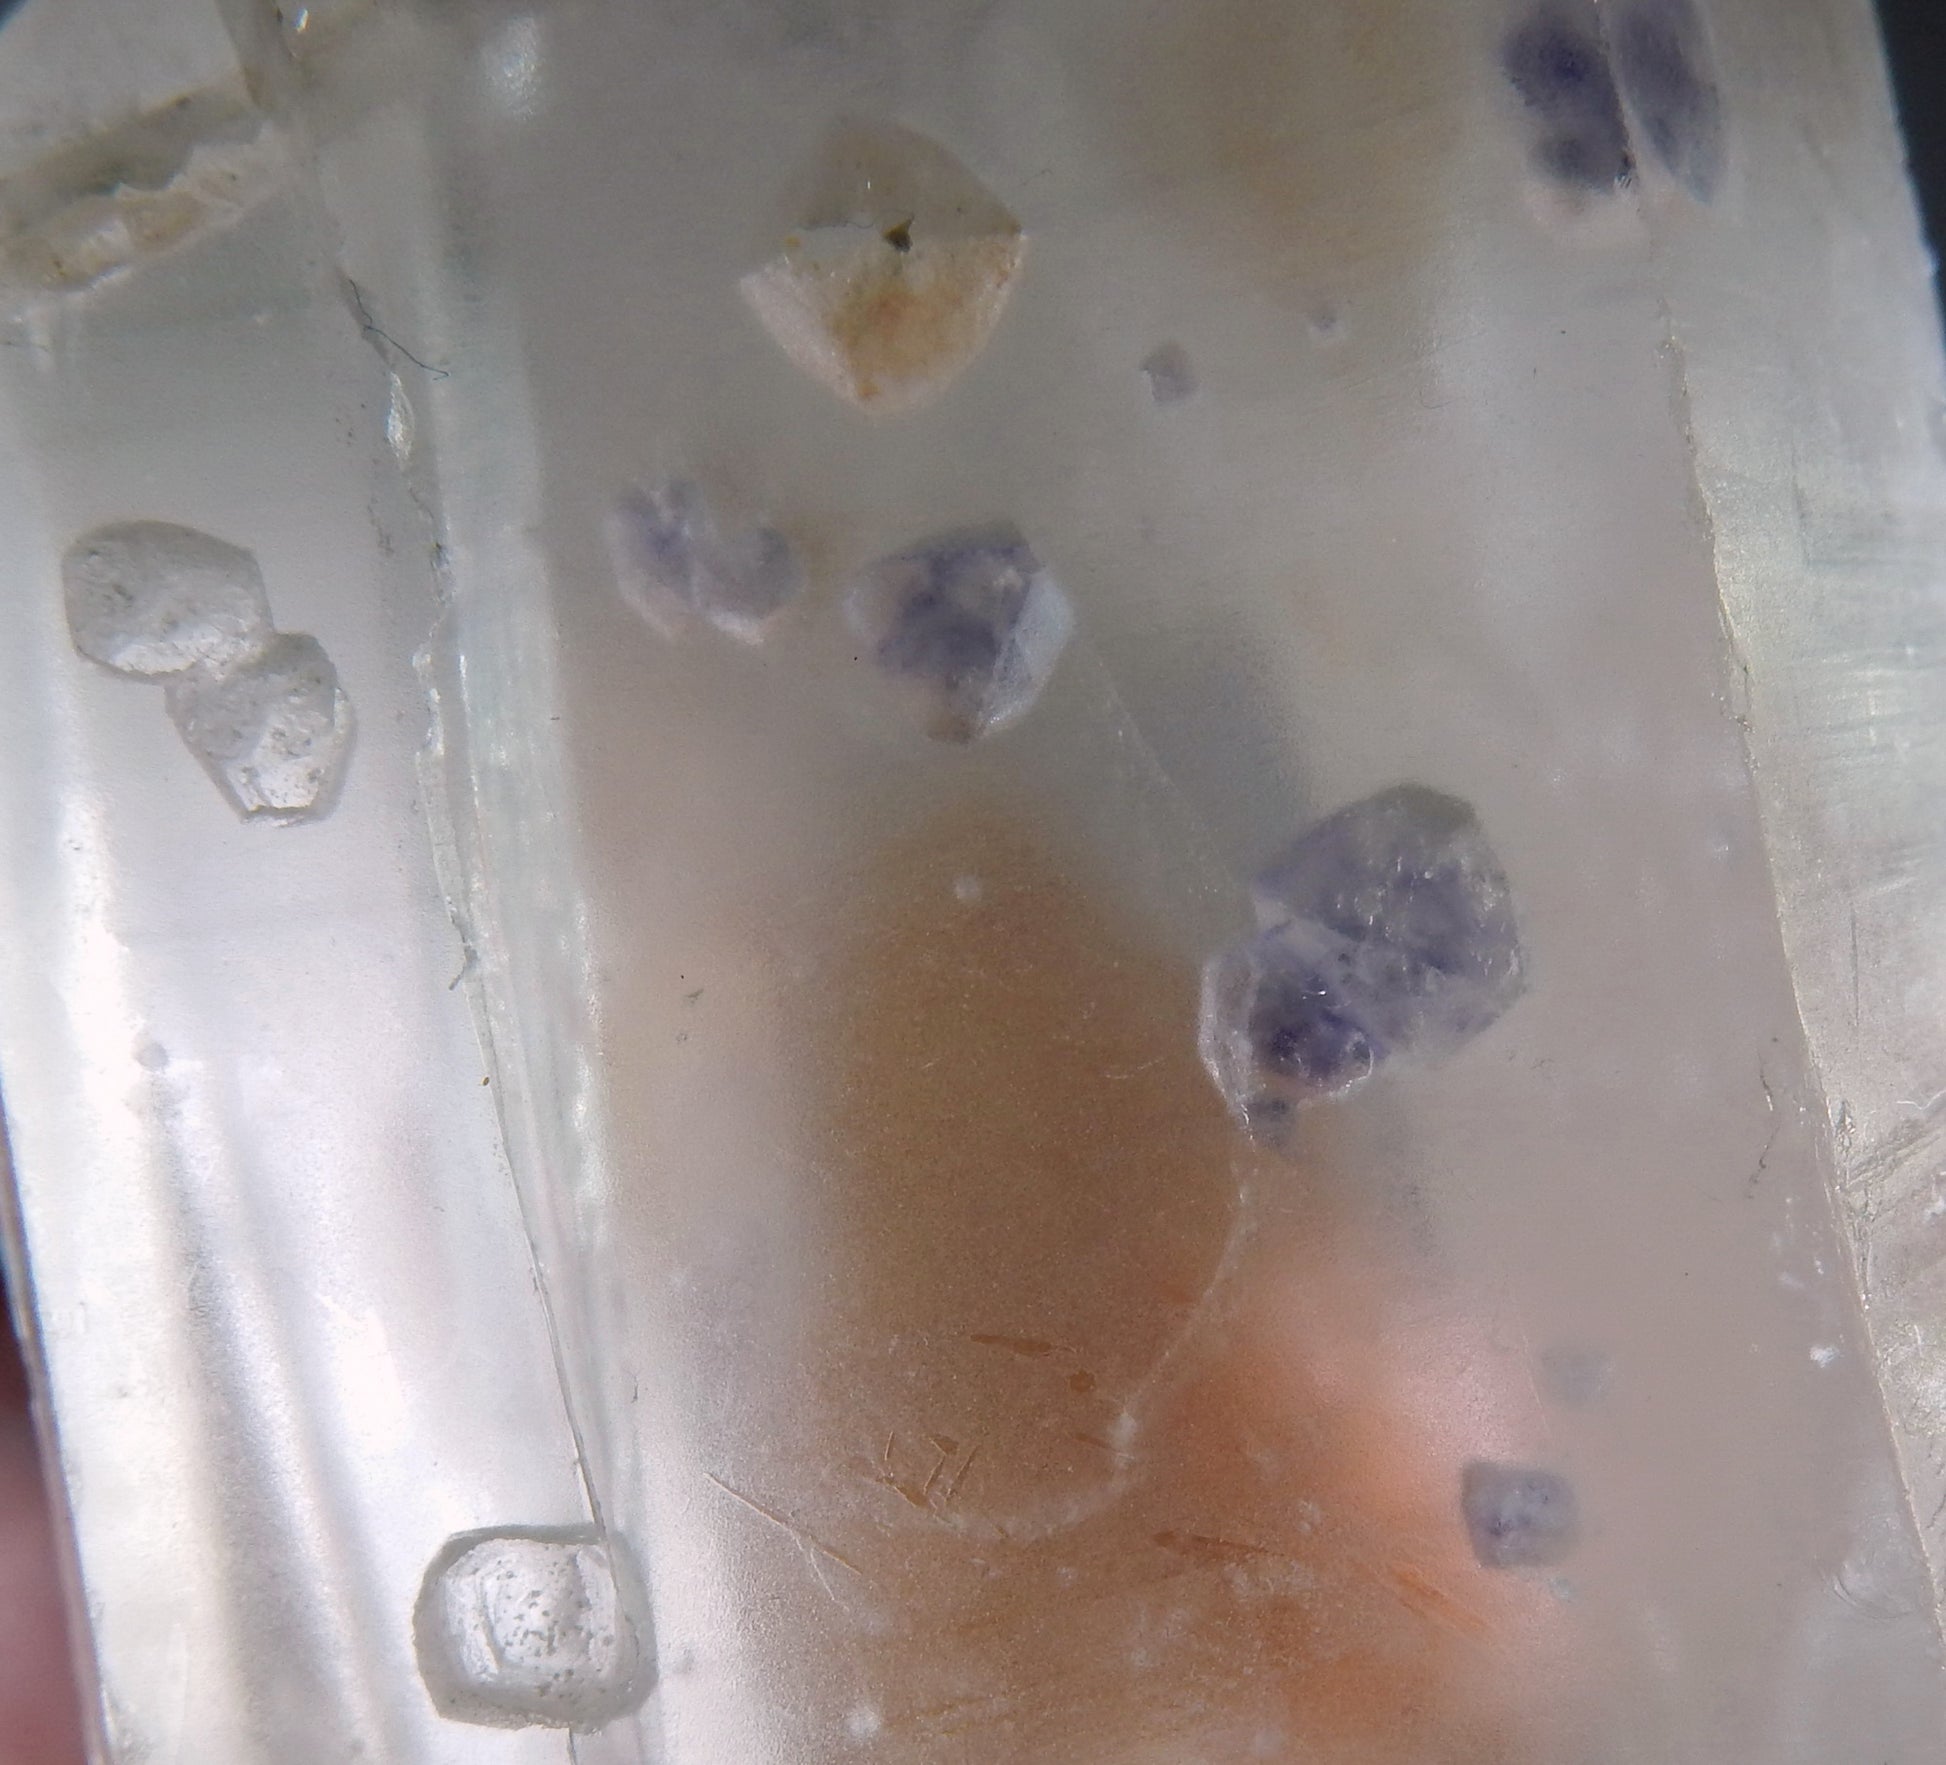 Quartz with Fluorite Inclusions - Mineral Specimen - 741.5 ct - prettyrock.com